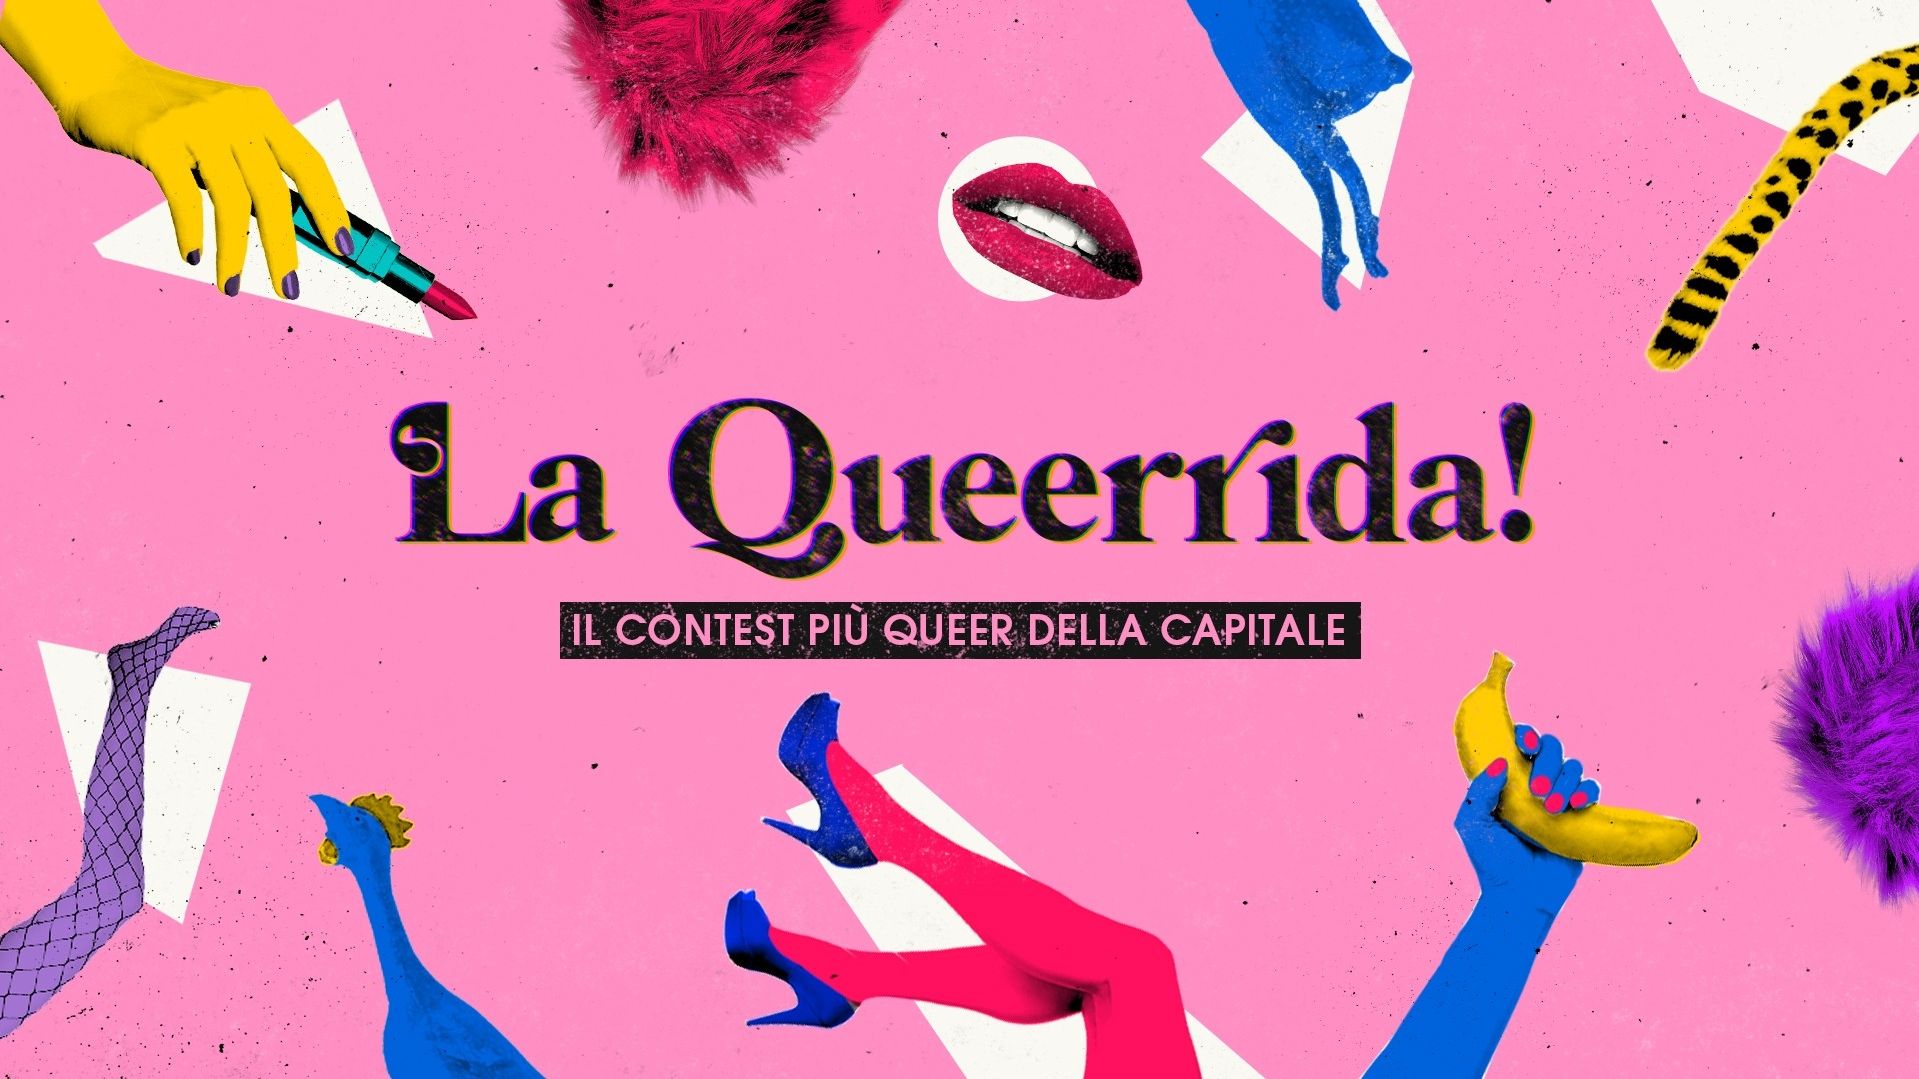 La Queerrida! Il contest più queer della capitale - Finalissima!